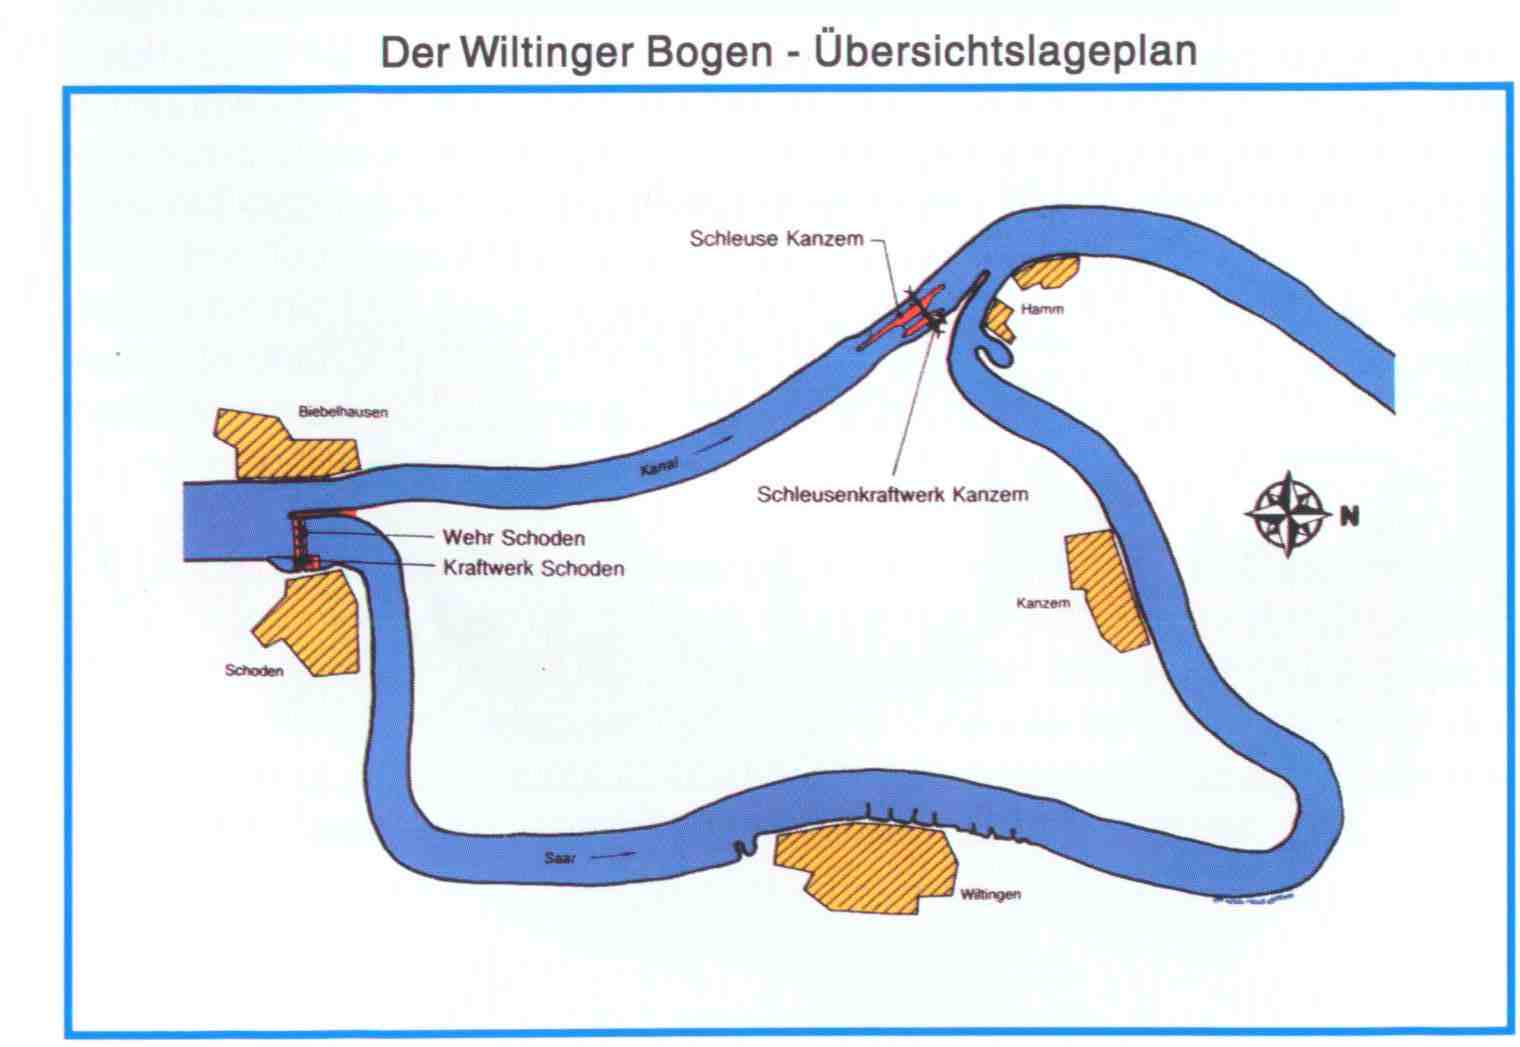 Wiltinger Saar-Bogen, Kanal Biebelhausen - Kanzem